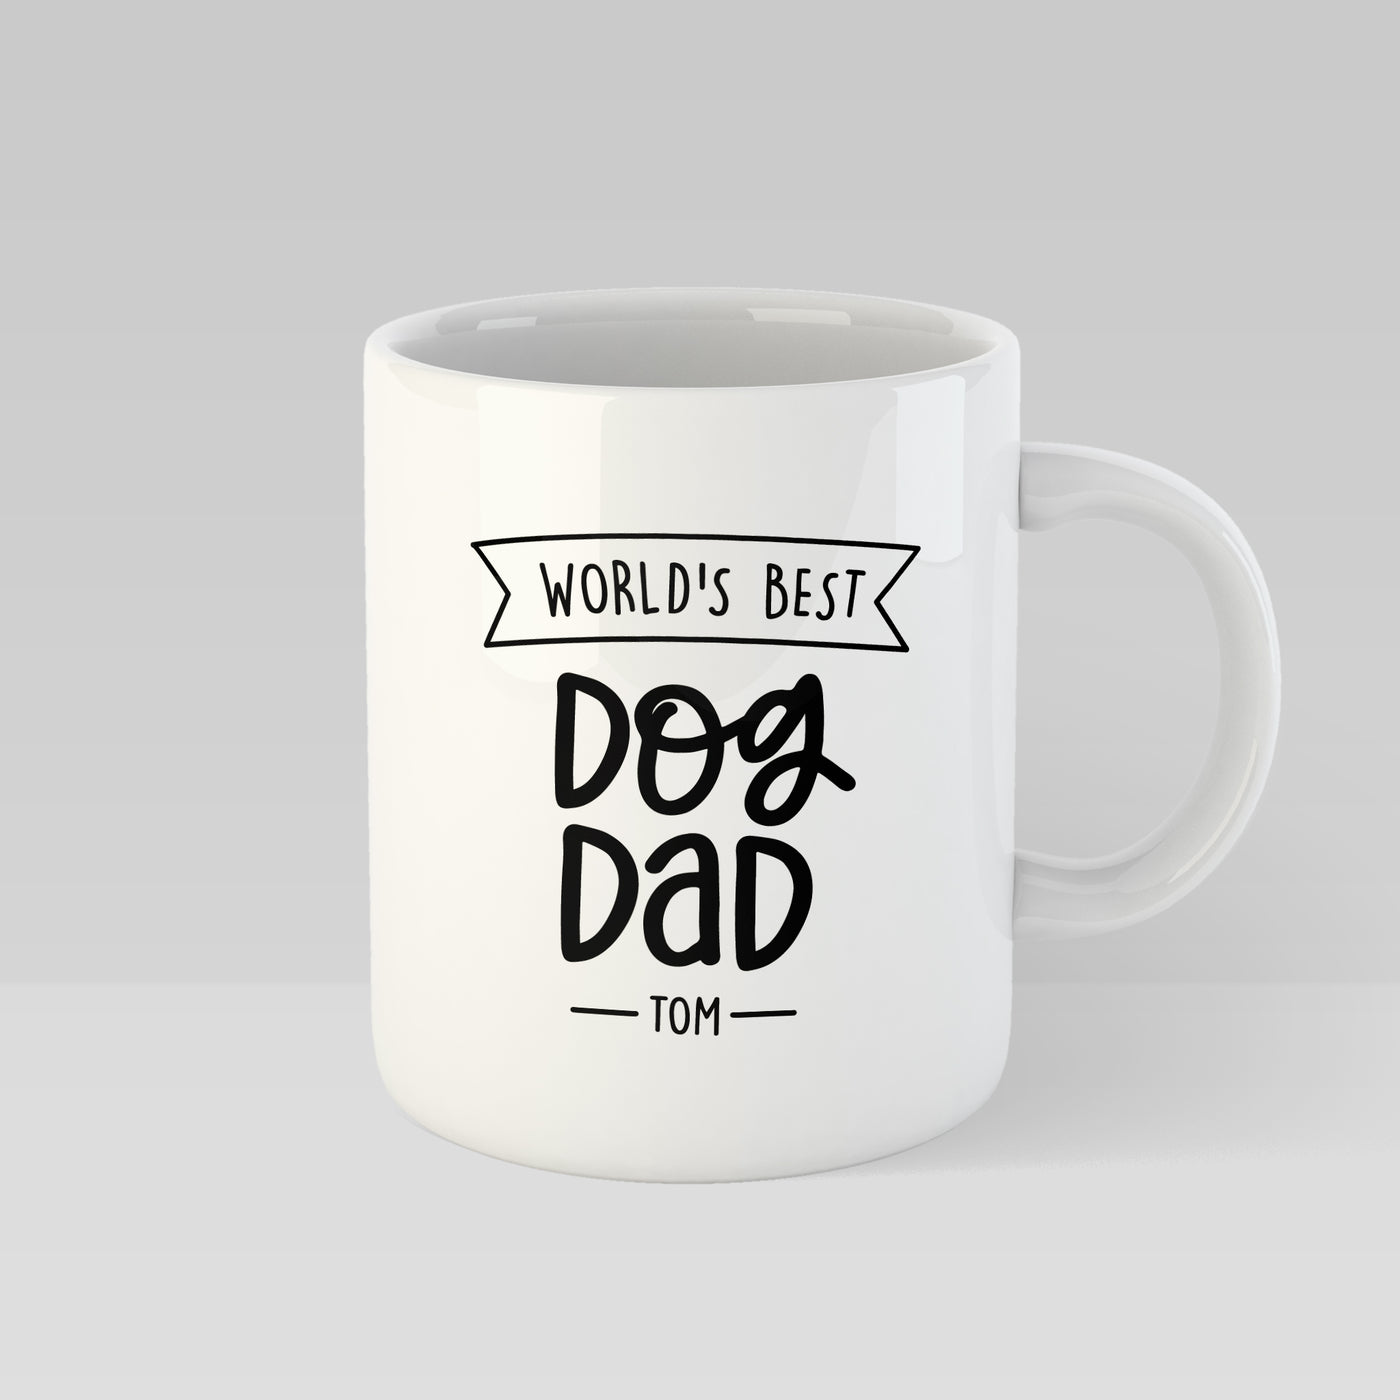 World's Best Dog Dad Personalised Mug